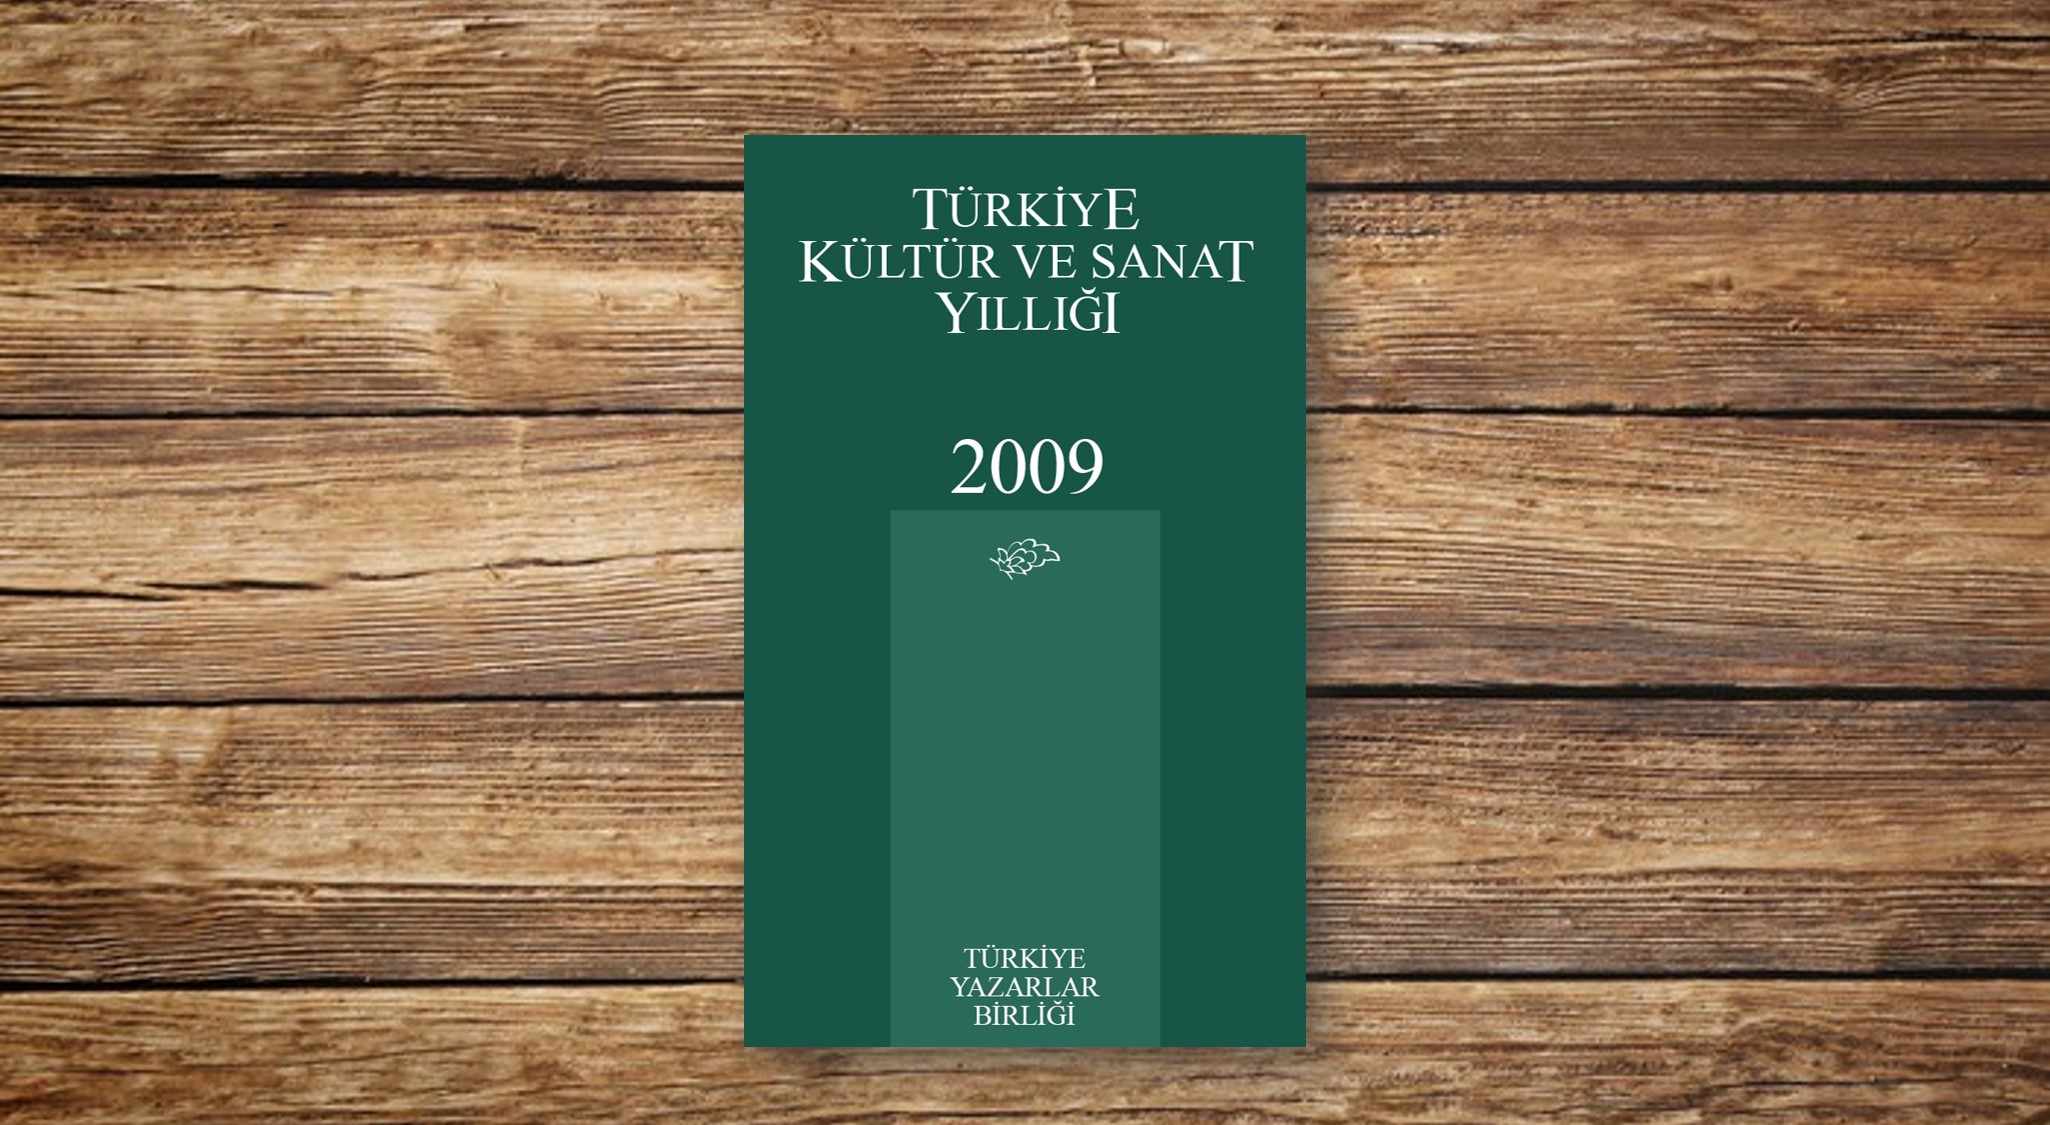 Türkiye Kültür ve Sanat Yıllığı 2009